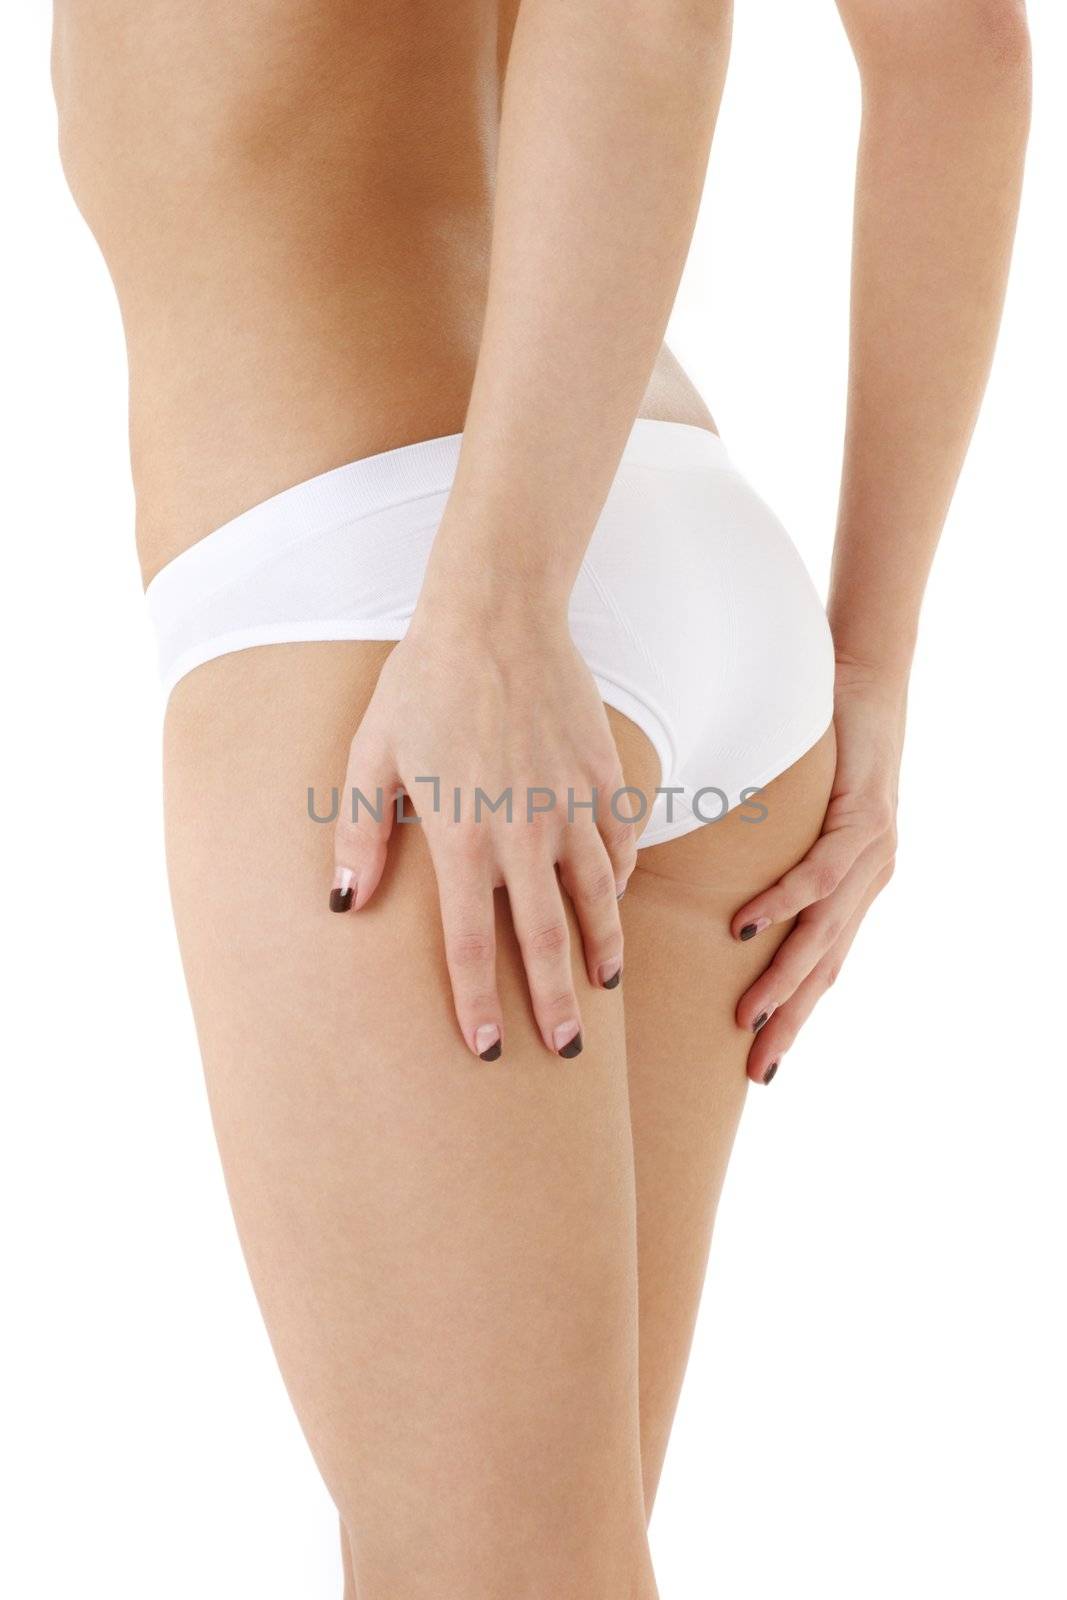 healthy back in white panties #2 by dolgachov